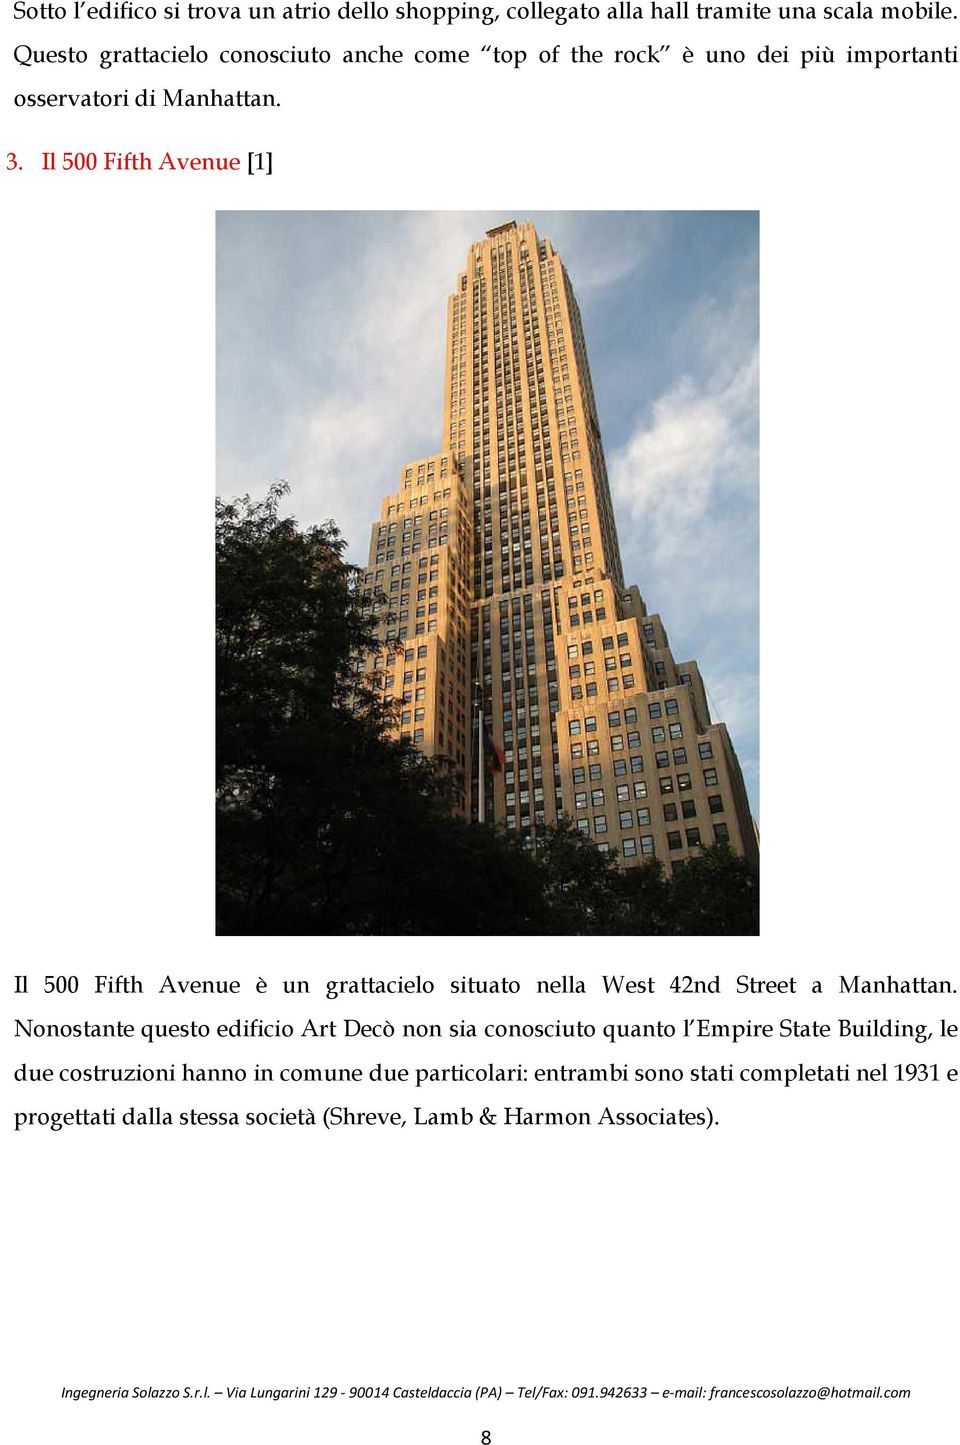 Il 500 Fifth Avenue [1] Il 500 Fifth Avenue è un grattacielo situato nella West 42nd Street a Manhattan.